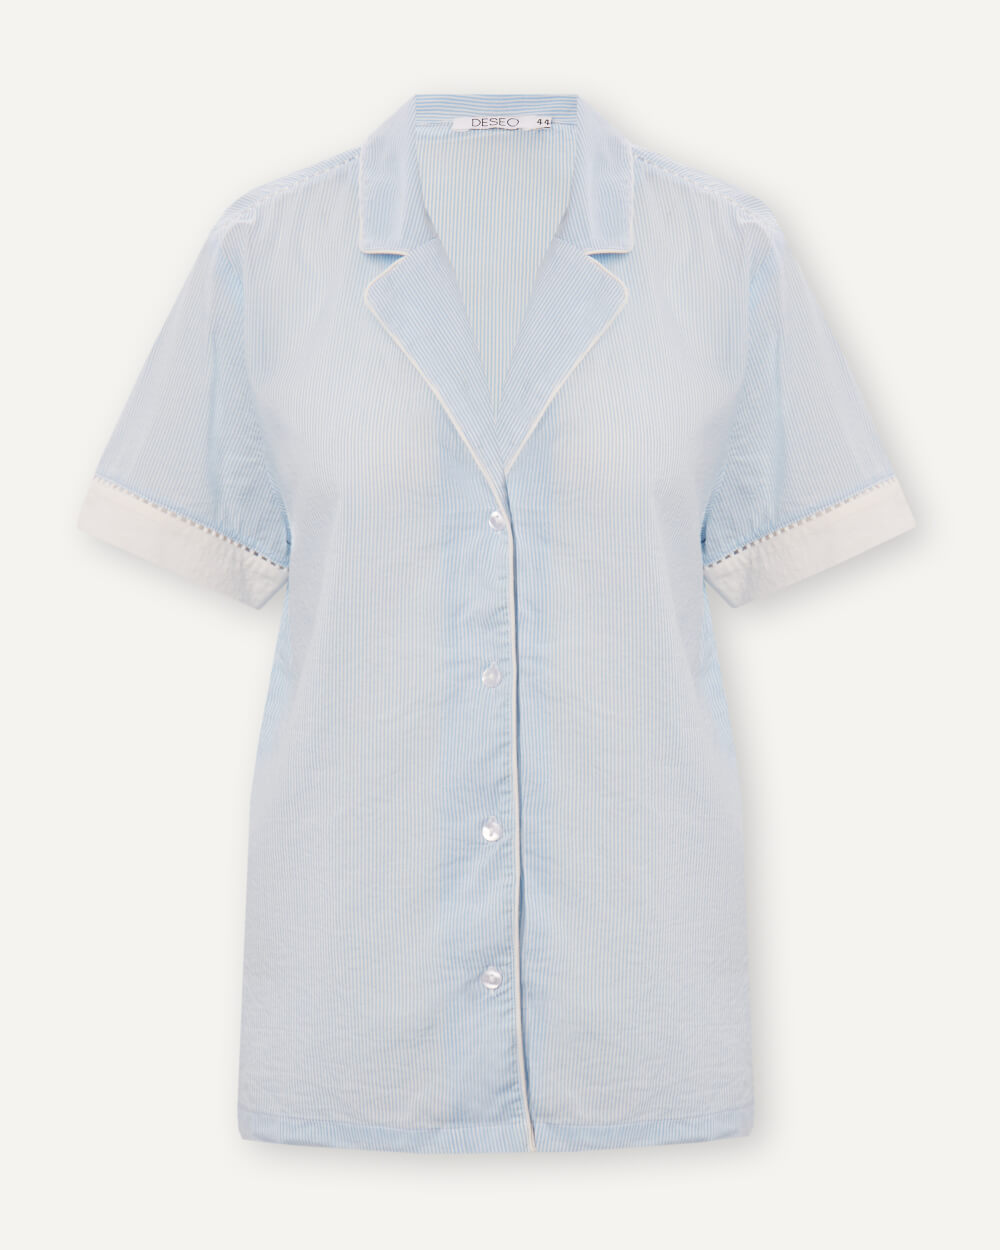 Рубашка домашняя женская DESEO 2.1.1.22.05.04.00070 белая 50 RU